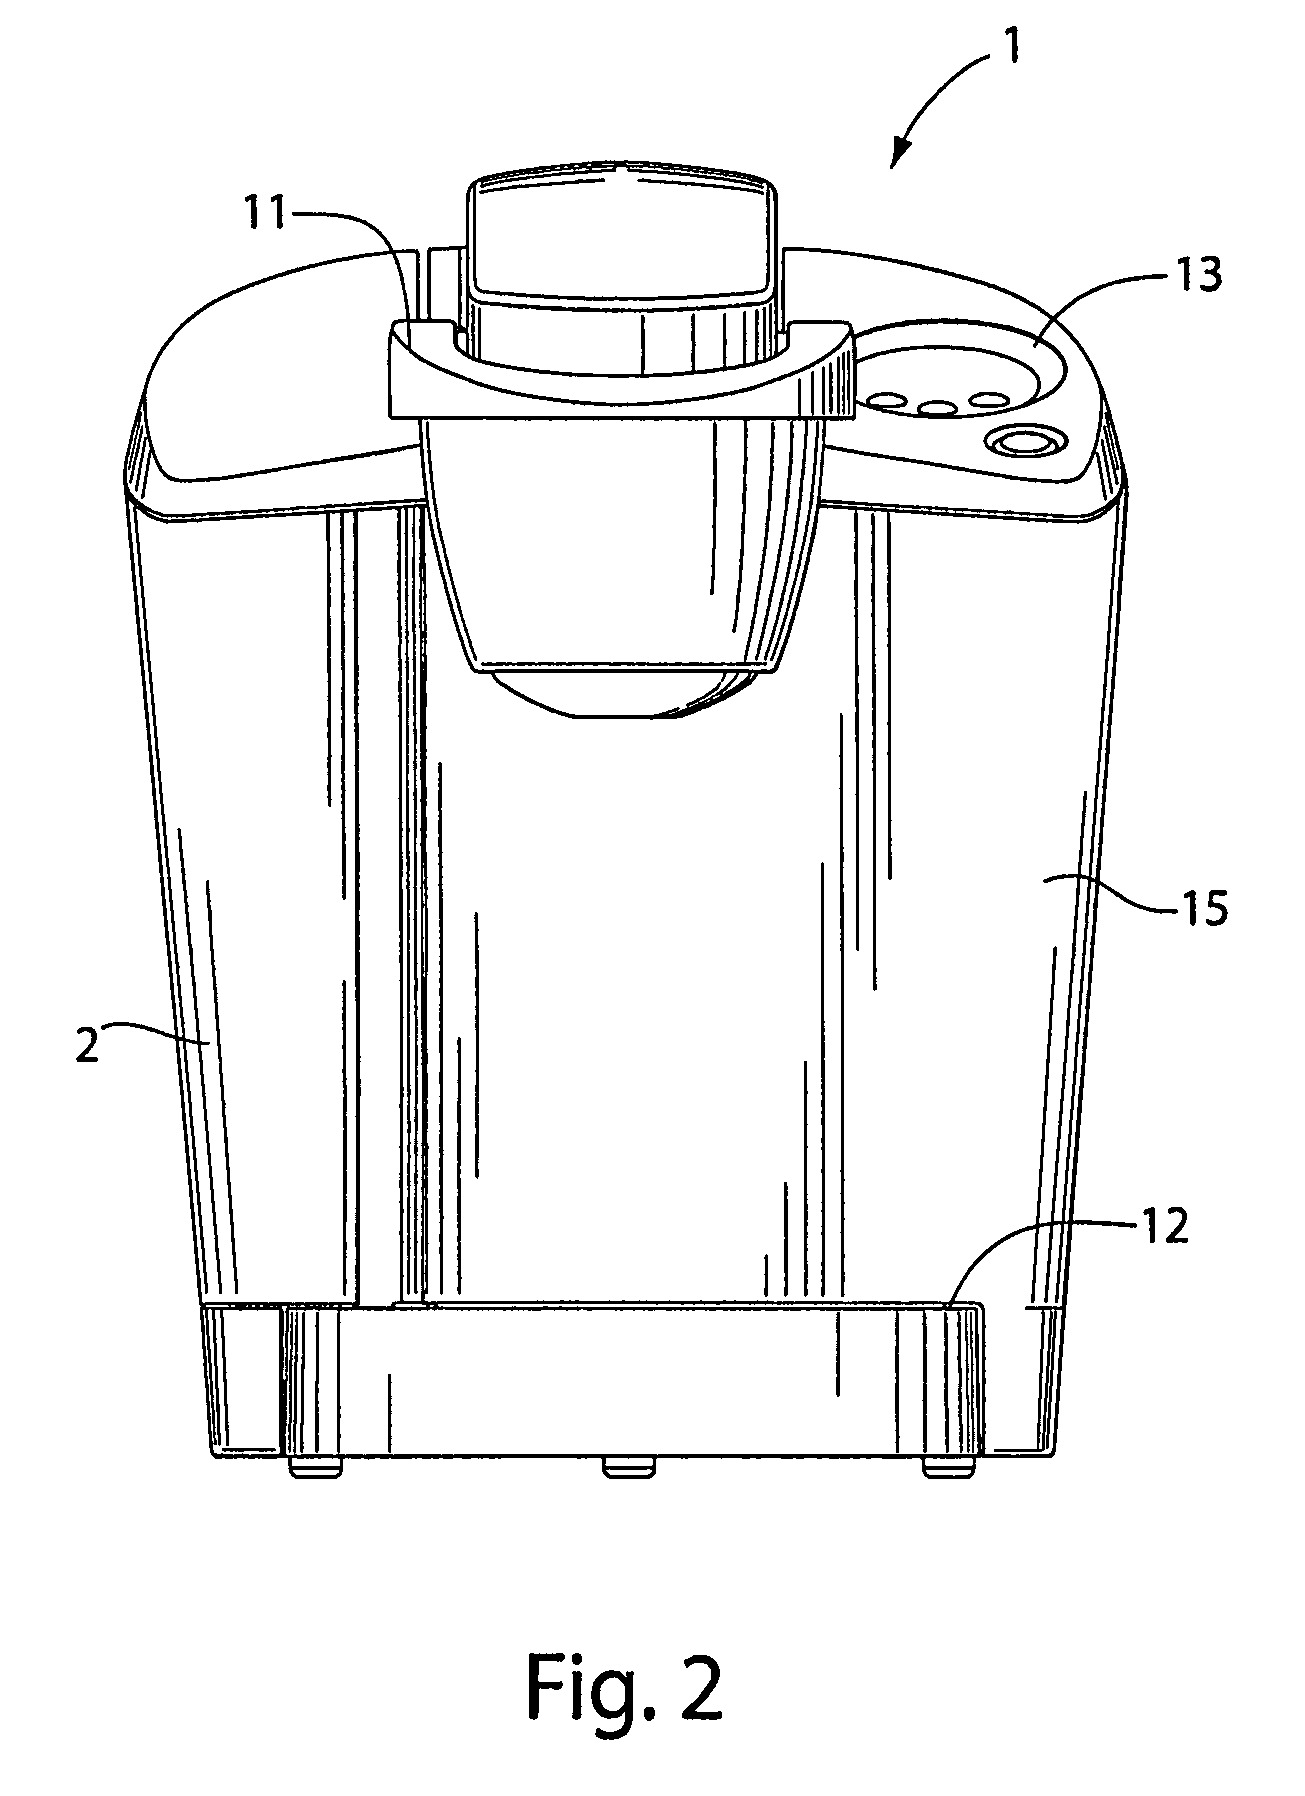 Method and apparatus for liquid level sensing